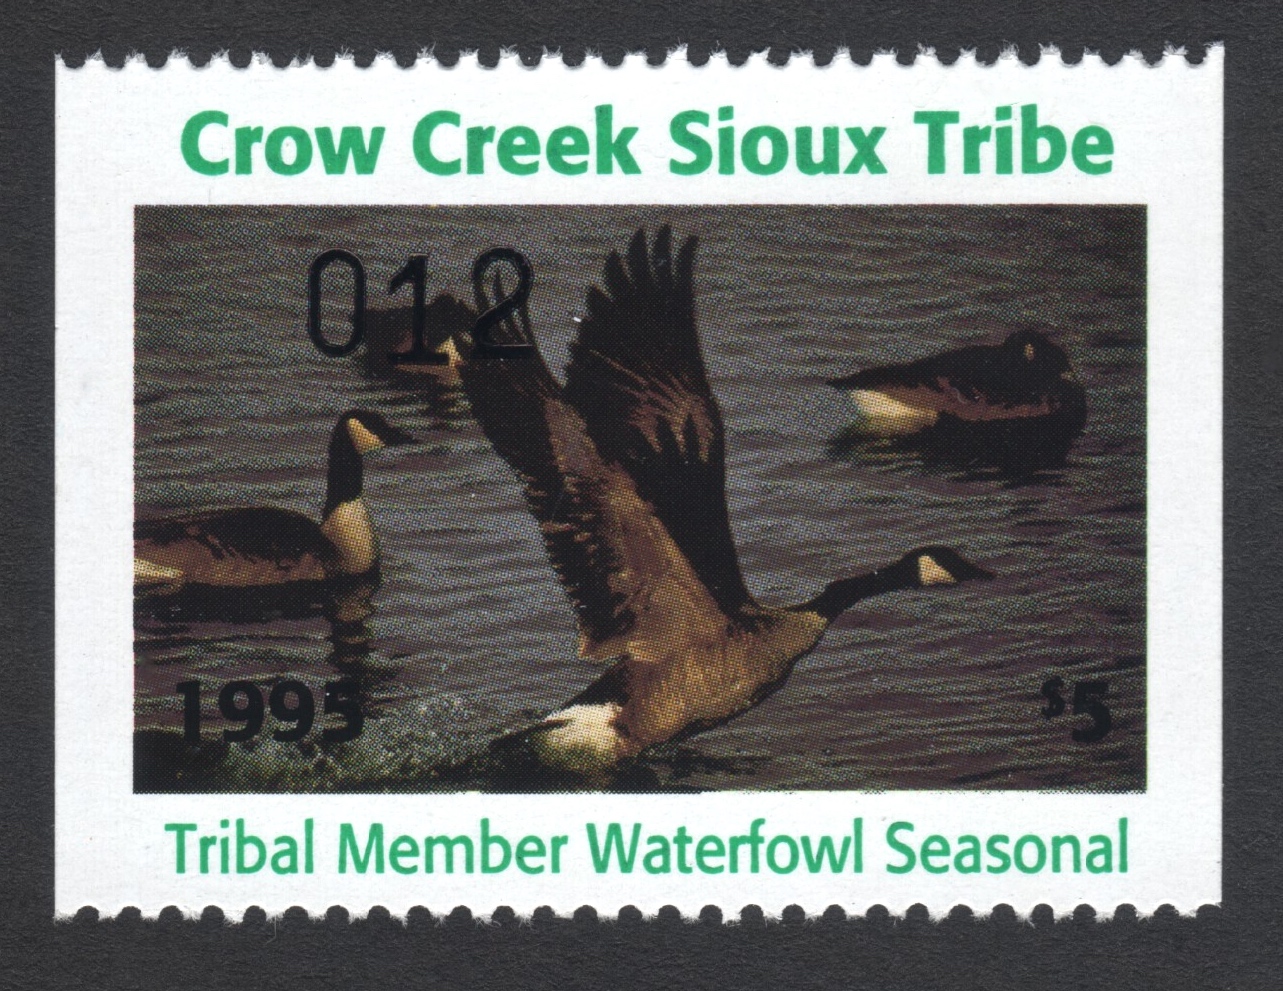 1995 Crow Creek Tribal Member Waterfowl